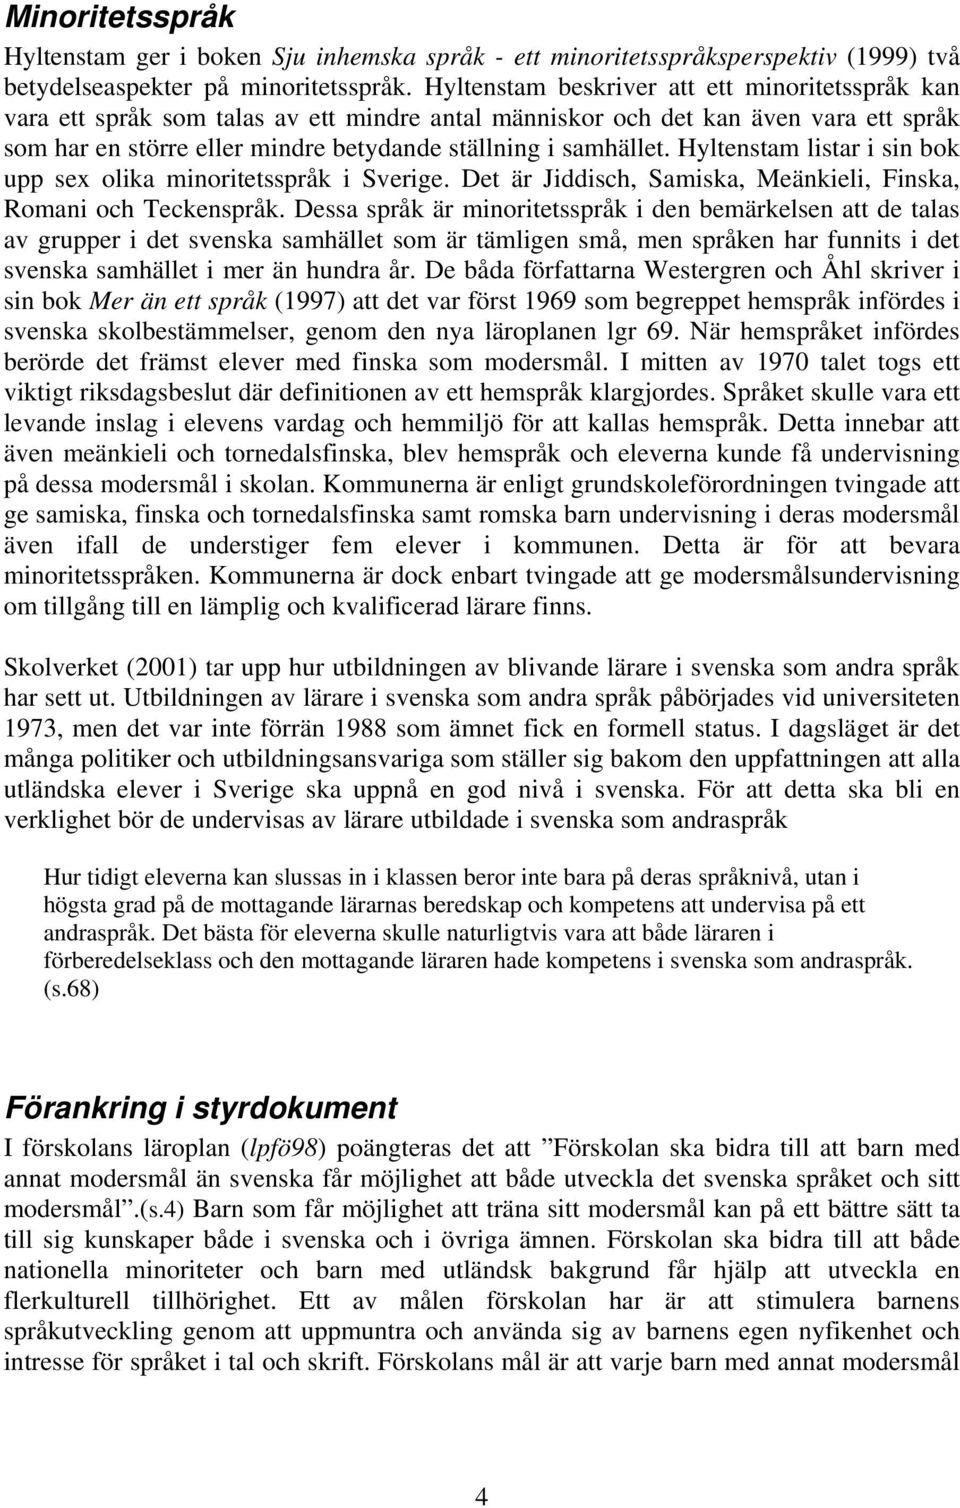 Hyltenstam listar i sin bok upp sex olika minoritetsspråk i Sverige. Det är Jiddisch, Samiska, Meänkieli, Finska, Romani och Teckenspråk.